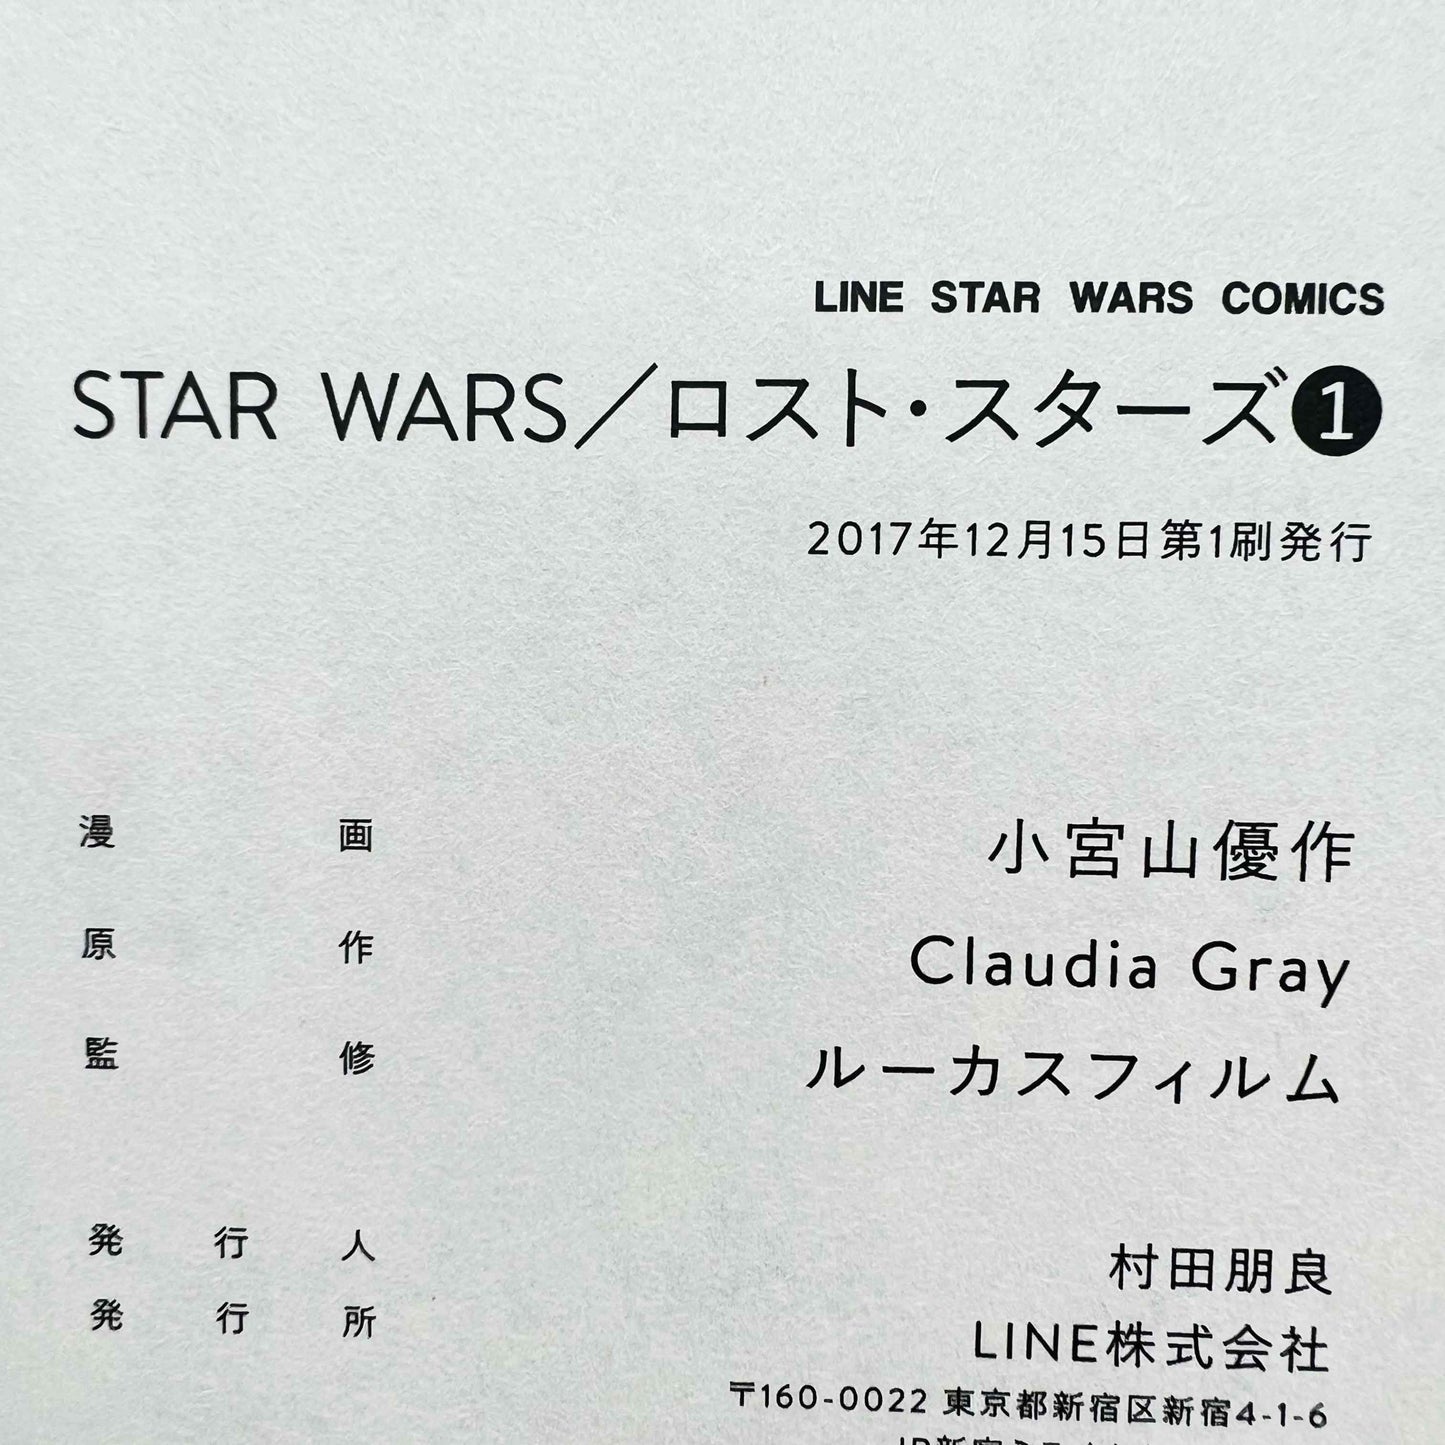 Star Wars Lost Stars (Box /w Holographic Post Card) - Volume 01 - 1stPrint.net - 1st First Print Edition Manga Store - M-STARWARSLSBOX-01-001